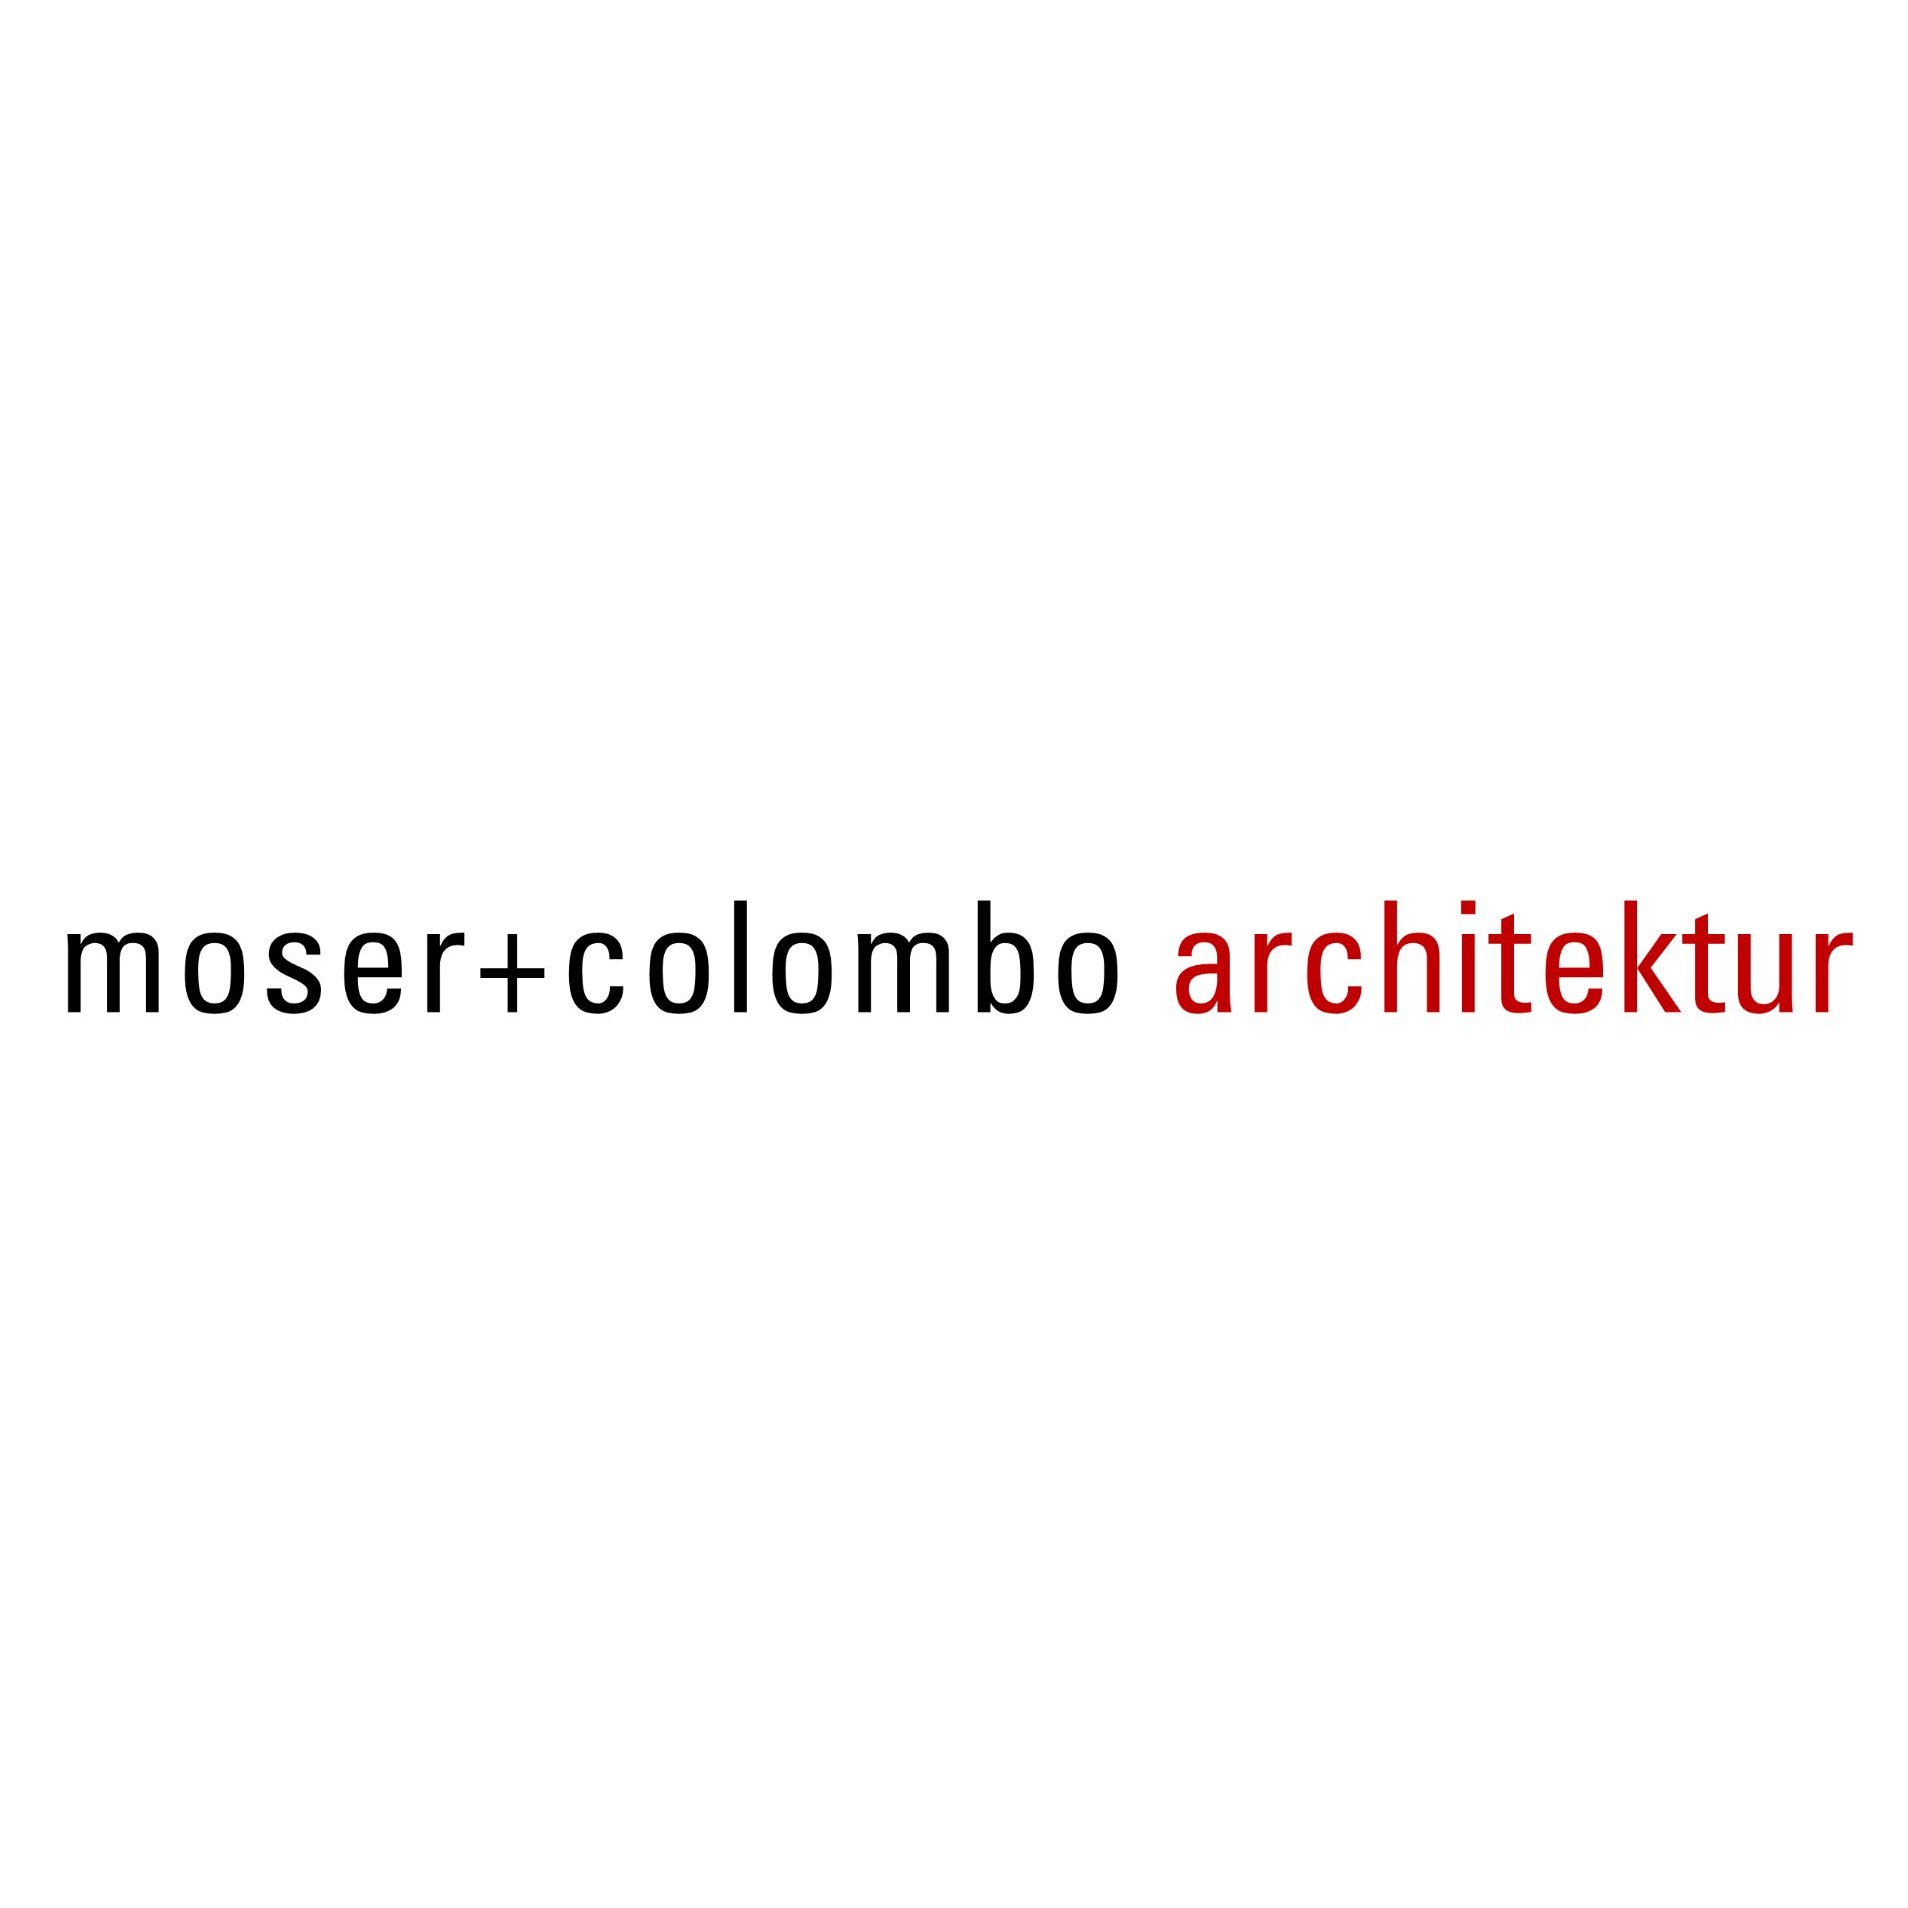 moser + colombo architektur - Ihr architekt für umbauten und sanierungen in der region aarau Logo